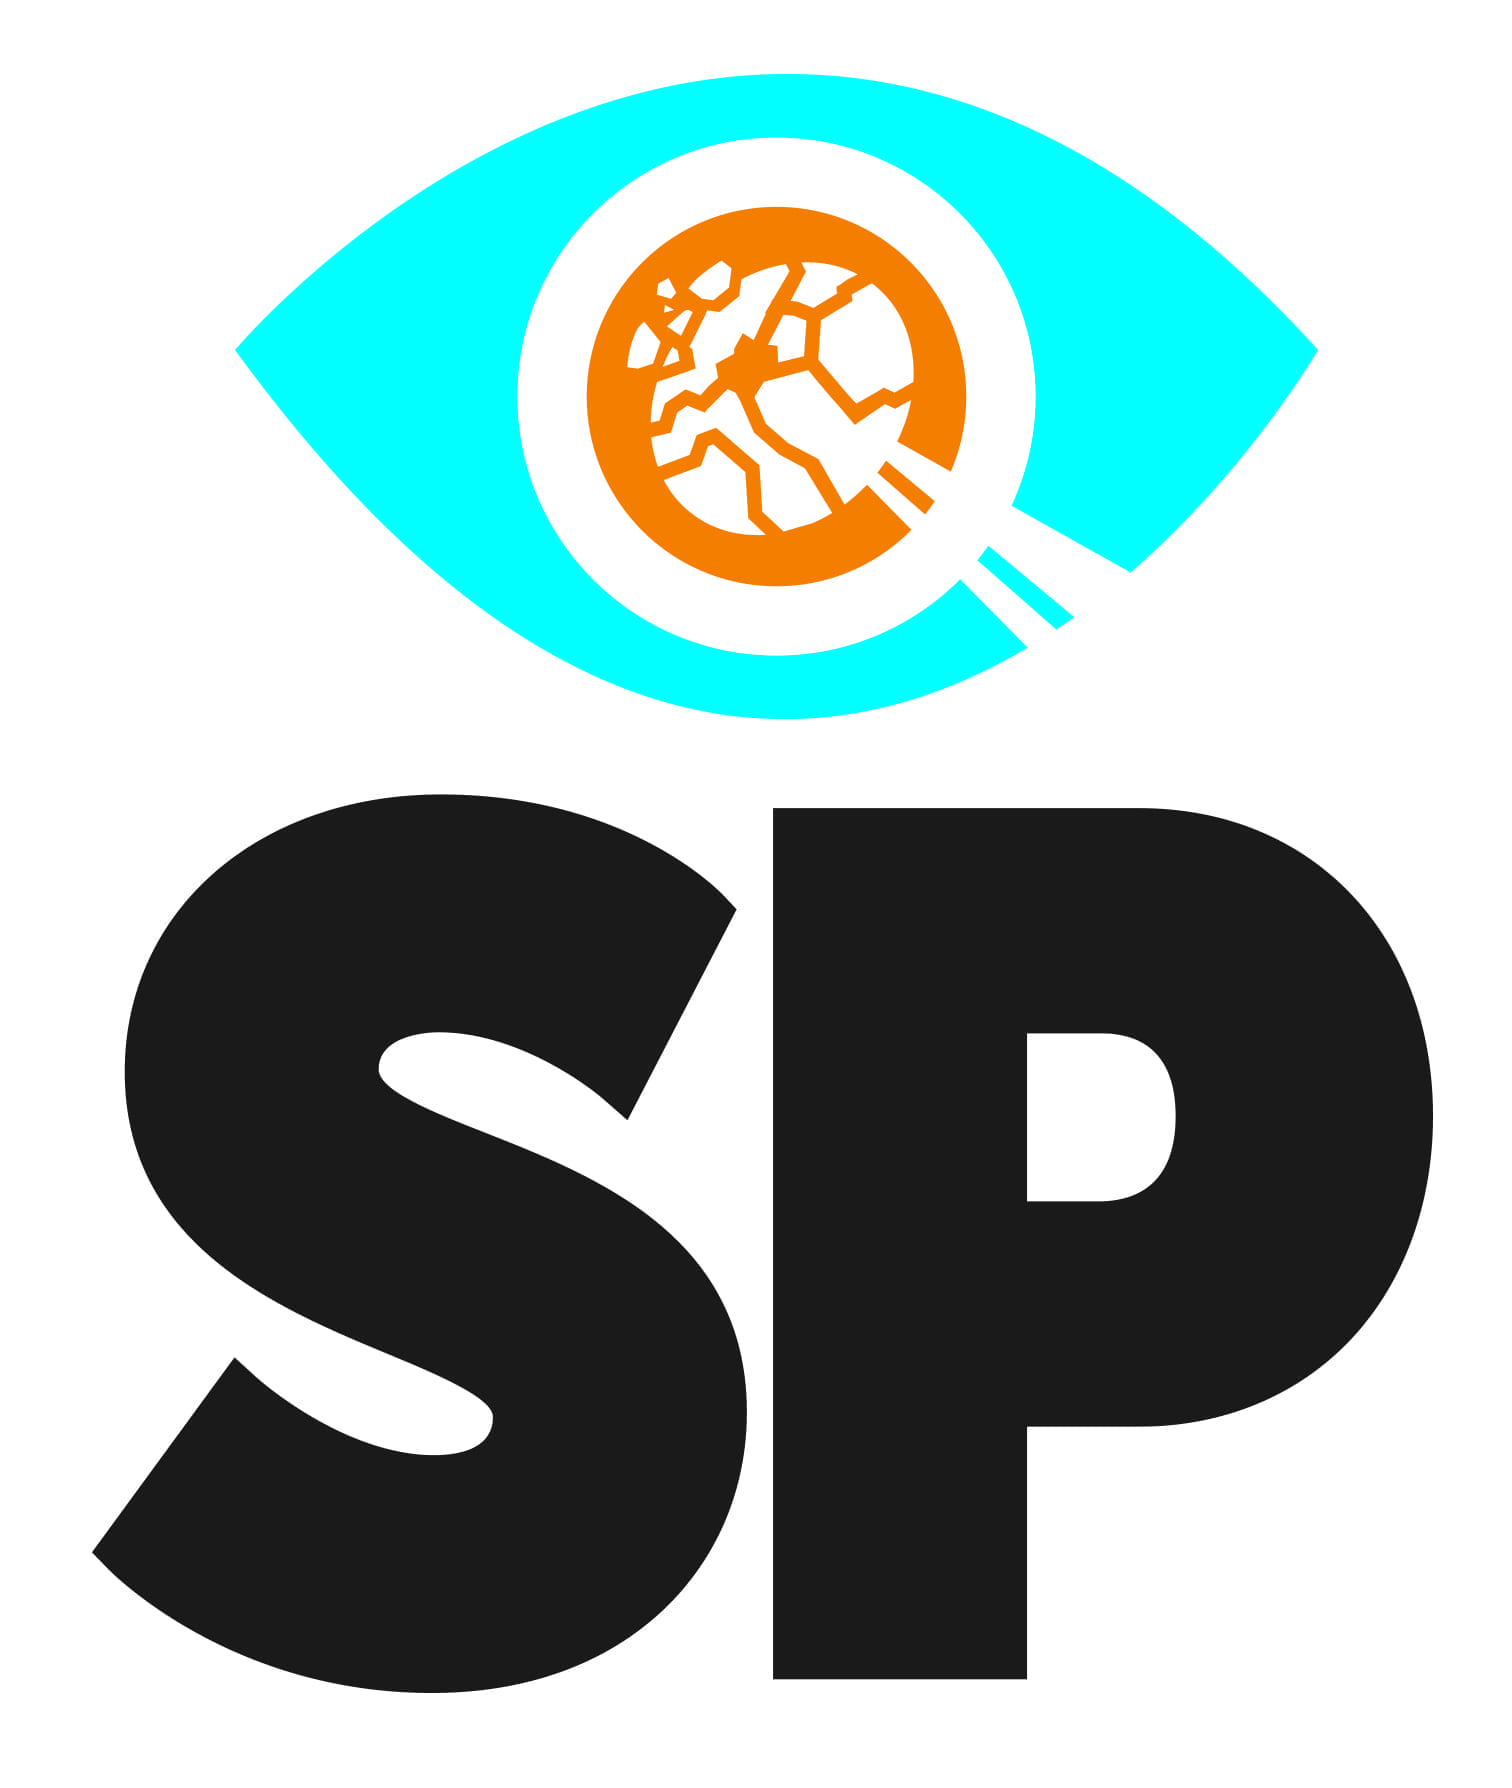 Shootsp logo